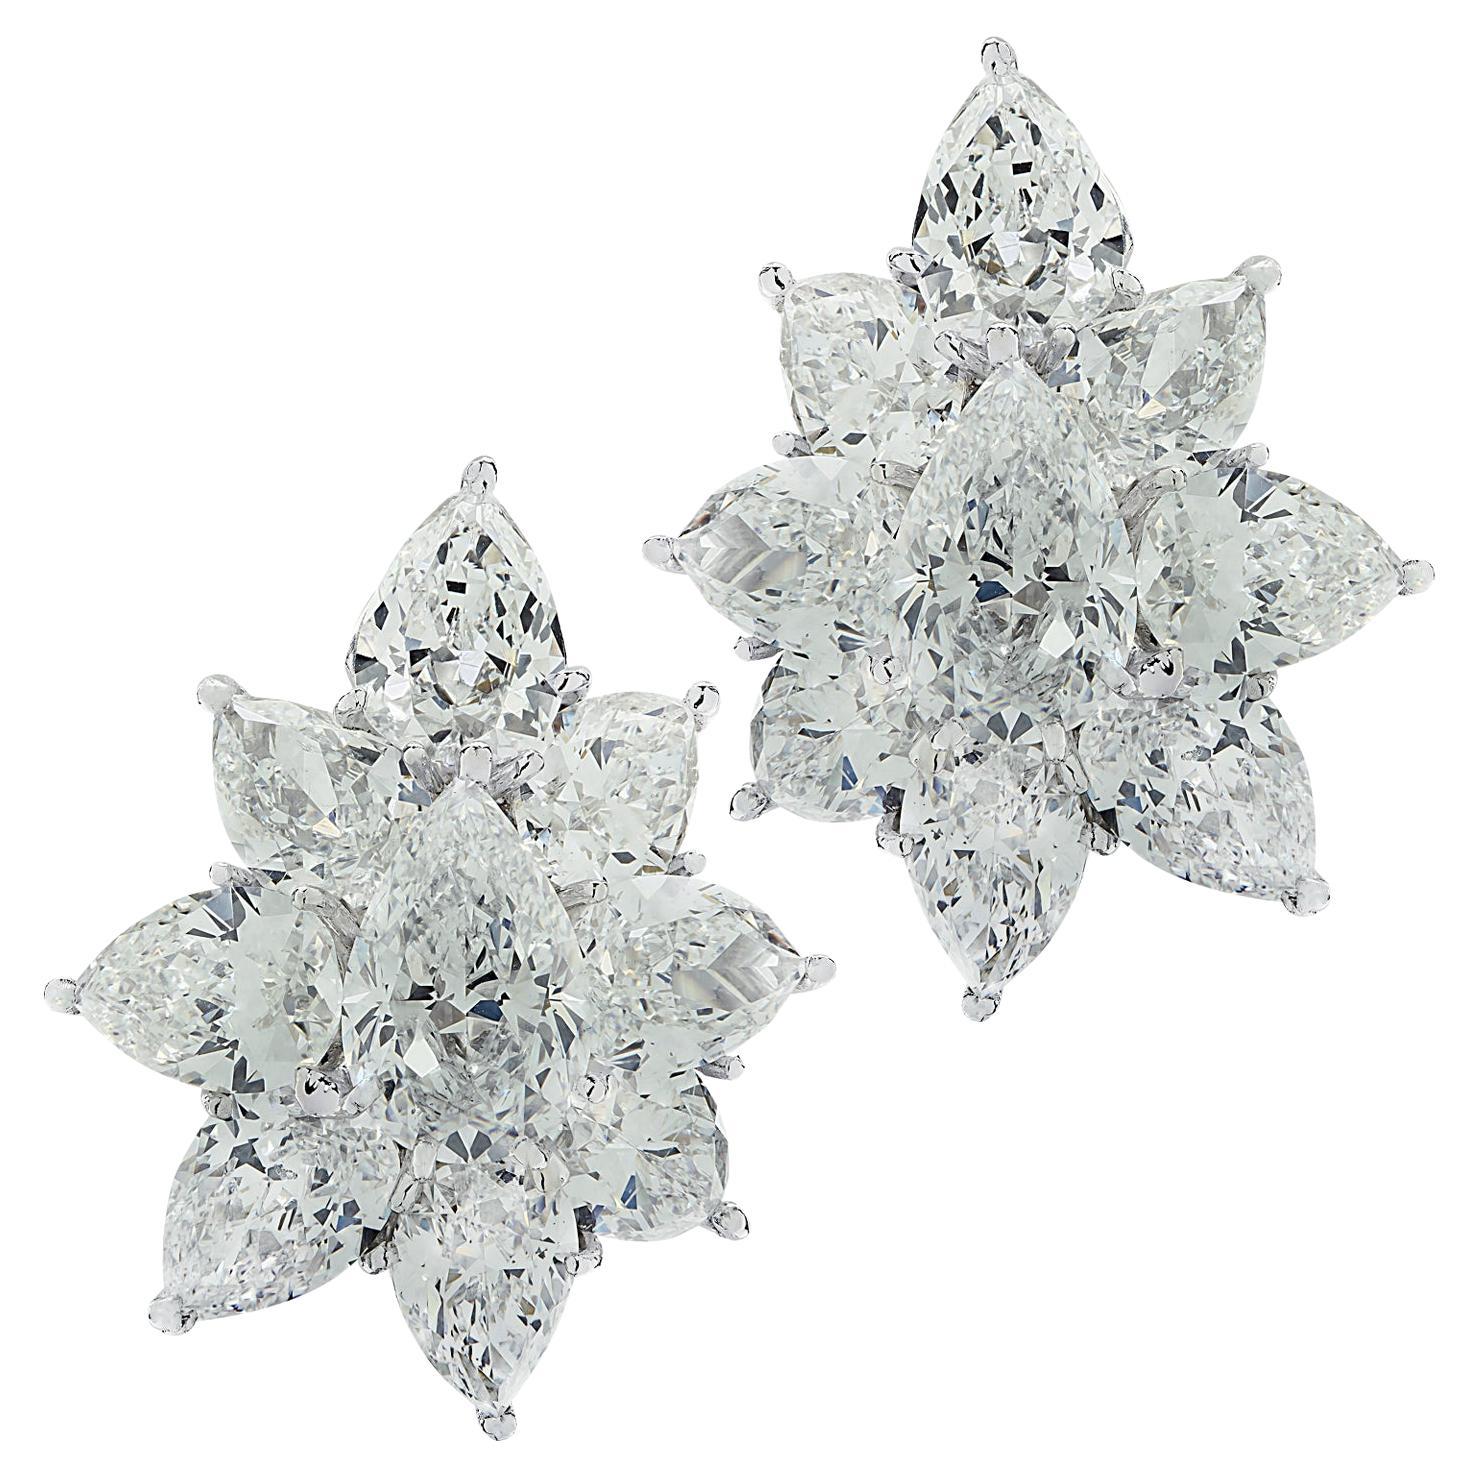  Cartier 19.80 Carat Pear Shape Diamond Cluster Earrings 